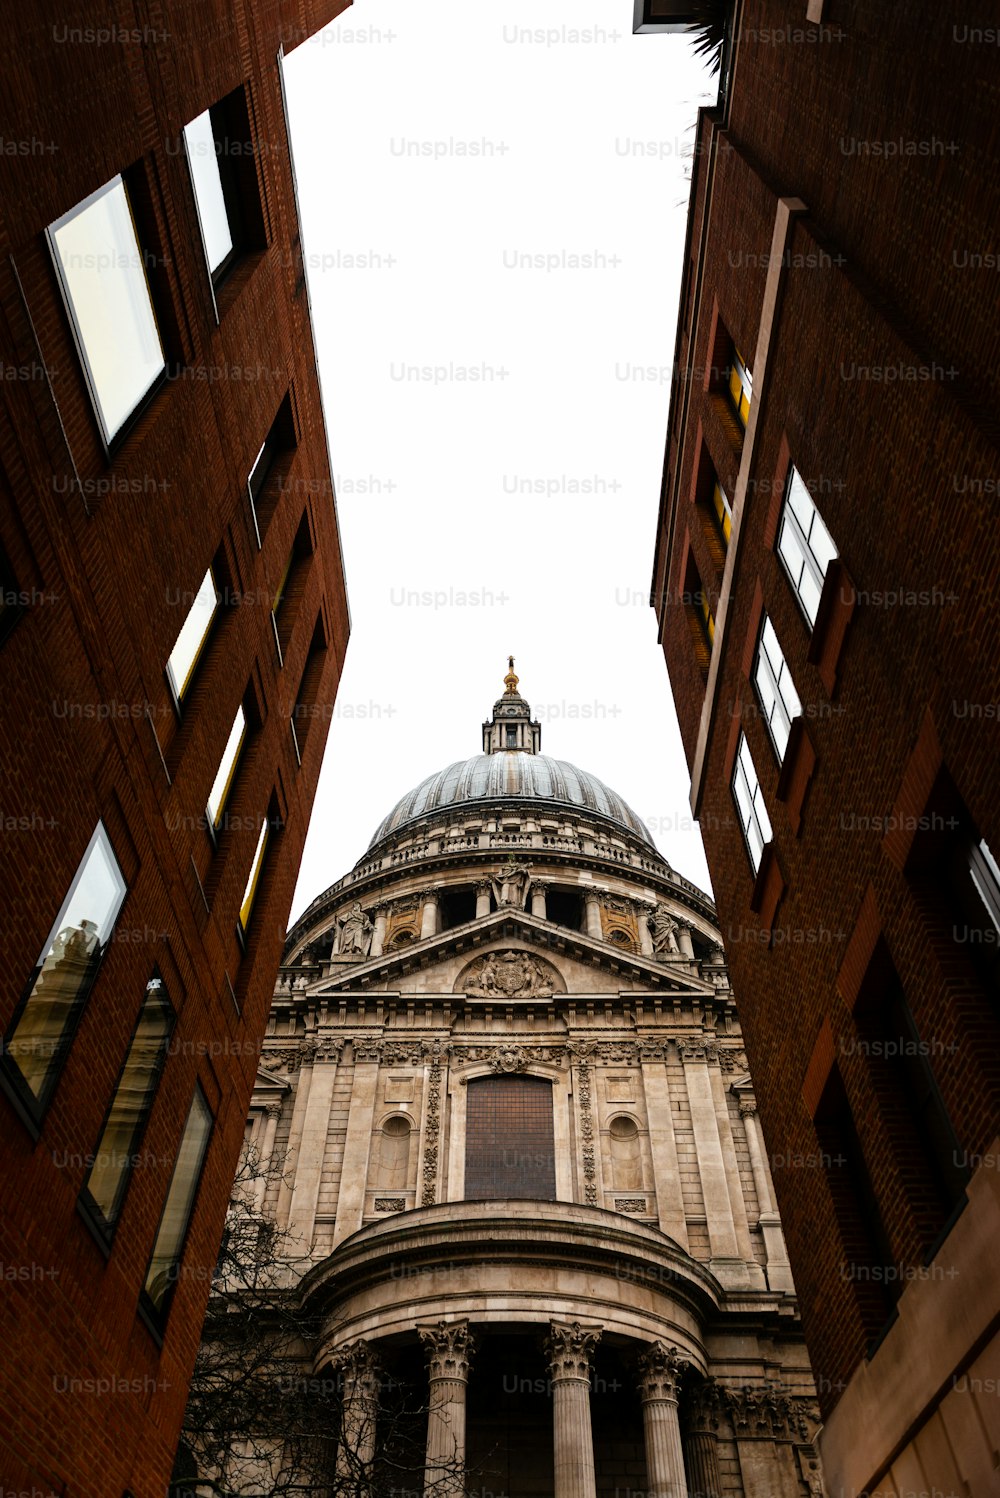 Vista laterale della Cattedrale di St.Paul a Londra vista attraverso una strada stretta. Costruito dopo il grande incendio di Londra del 1666, è il capolavoro di Christopher Wren e una delle attrazioni più turistiche della città.